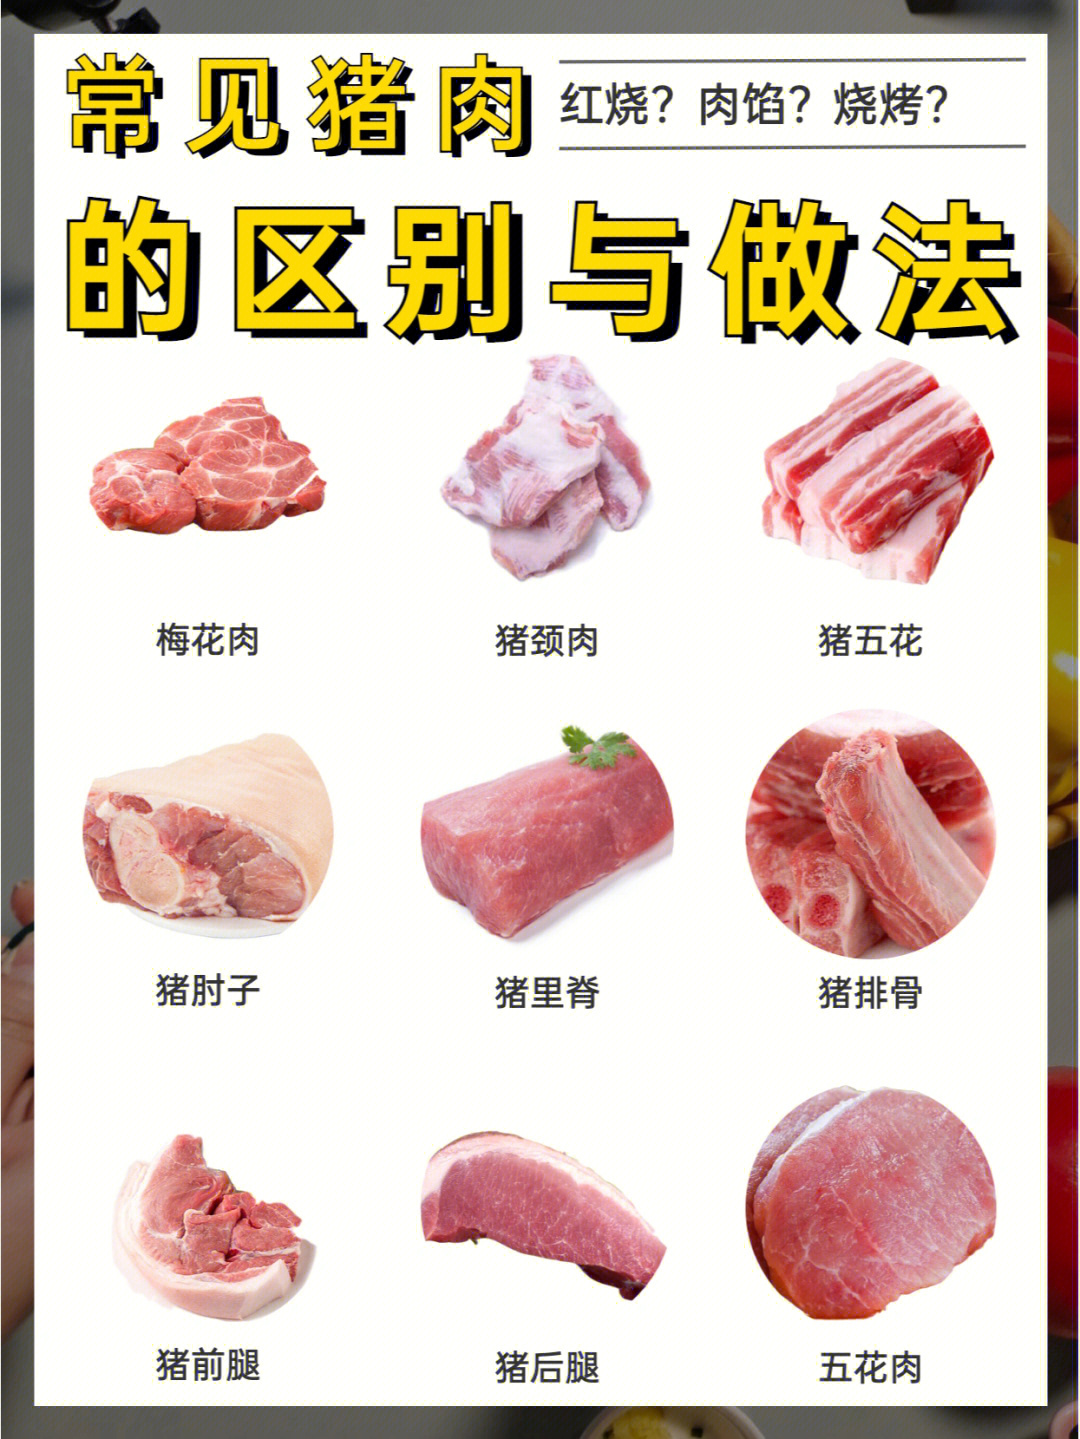 常见猪肉各部位的区别和做法75一图看懂